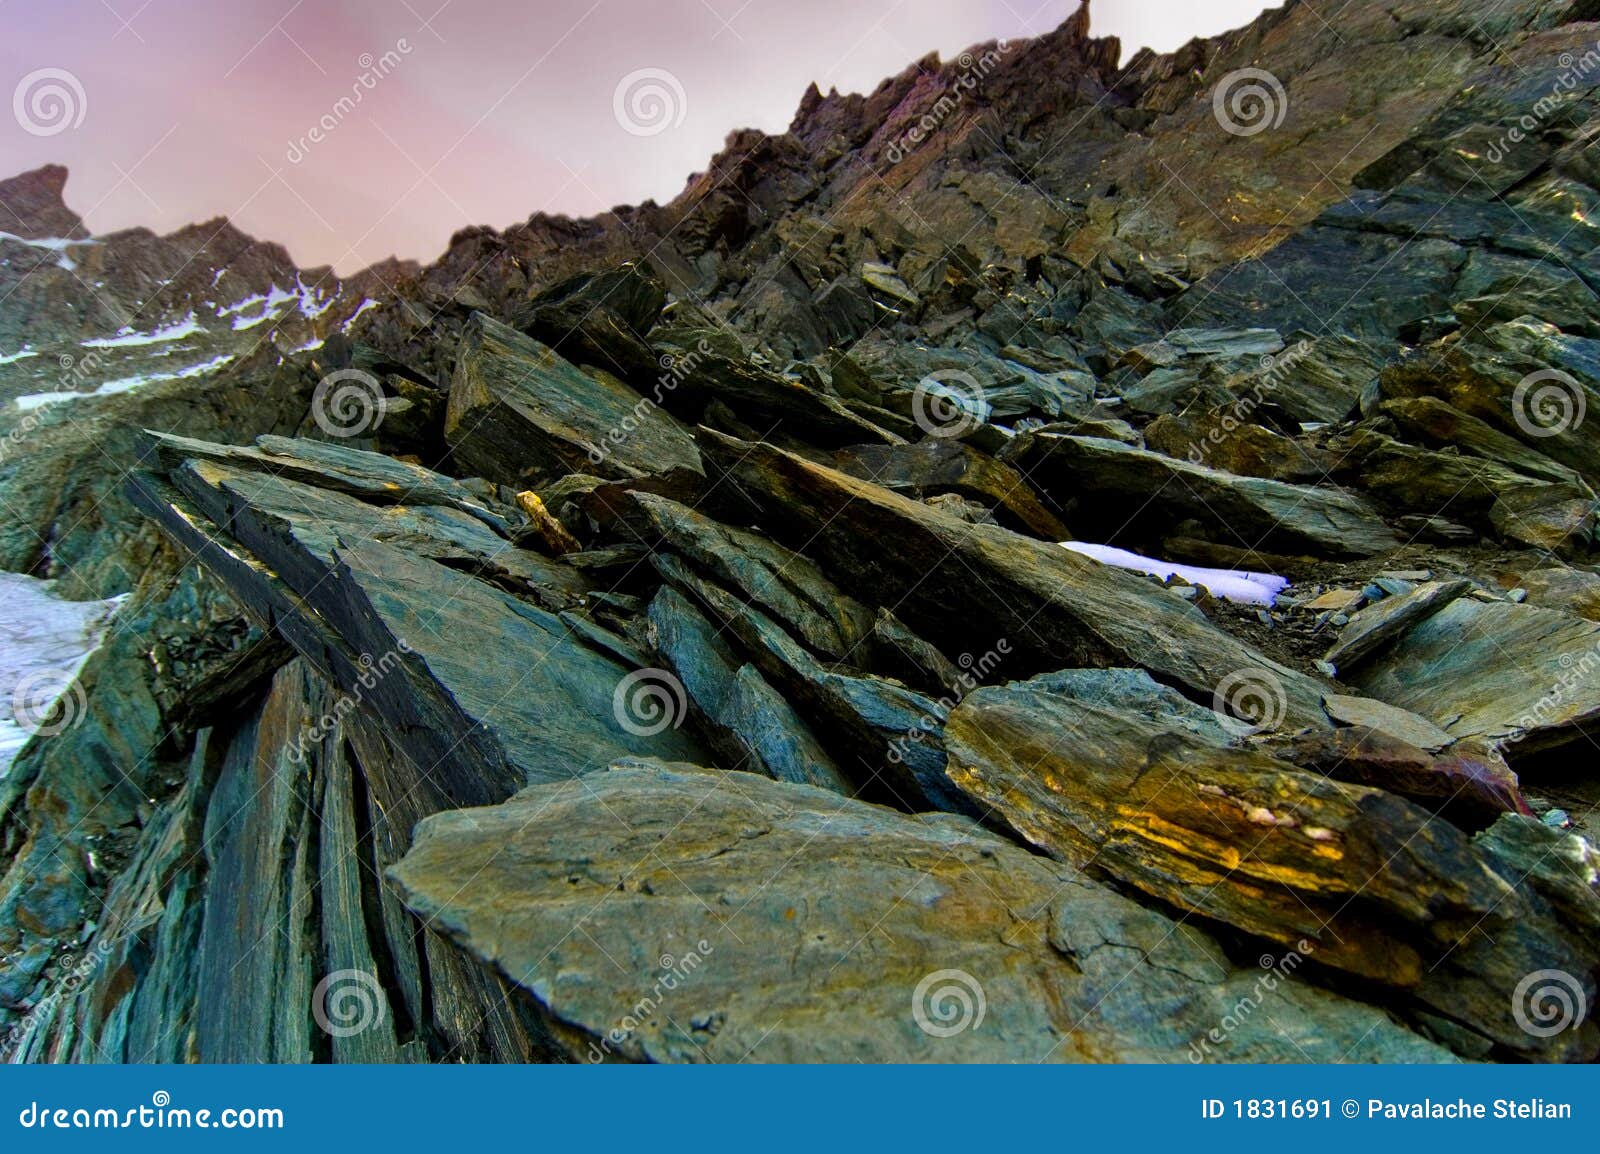 https://thumbs.dreamstime.com/z/sharp-rocks-near-grossglokner-peak-1831691.jpg